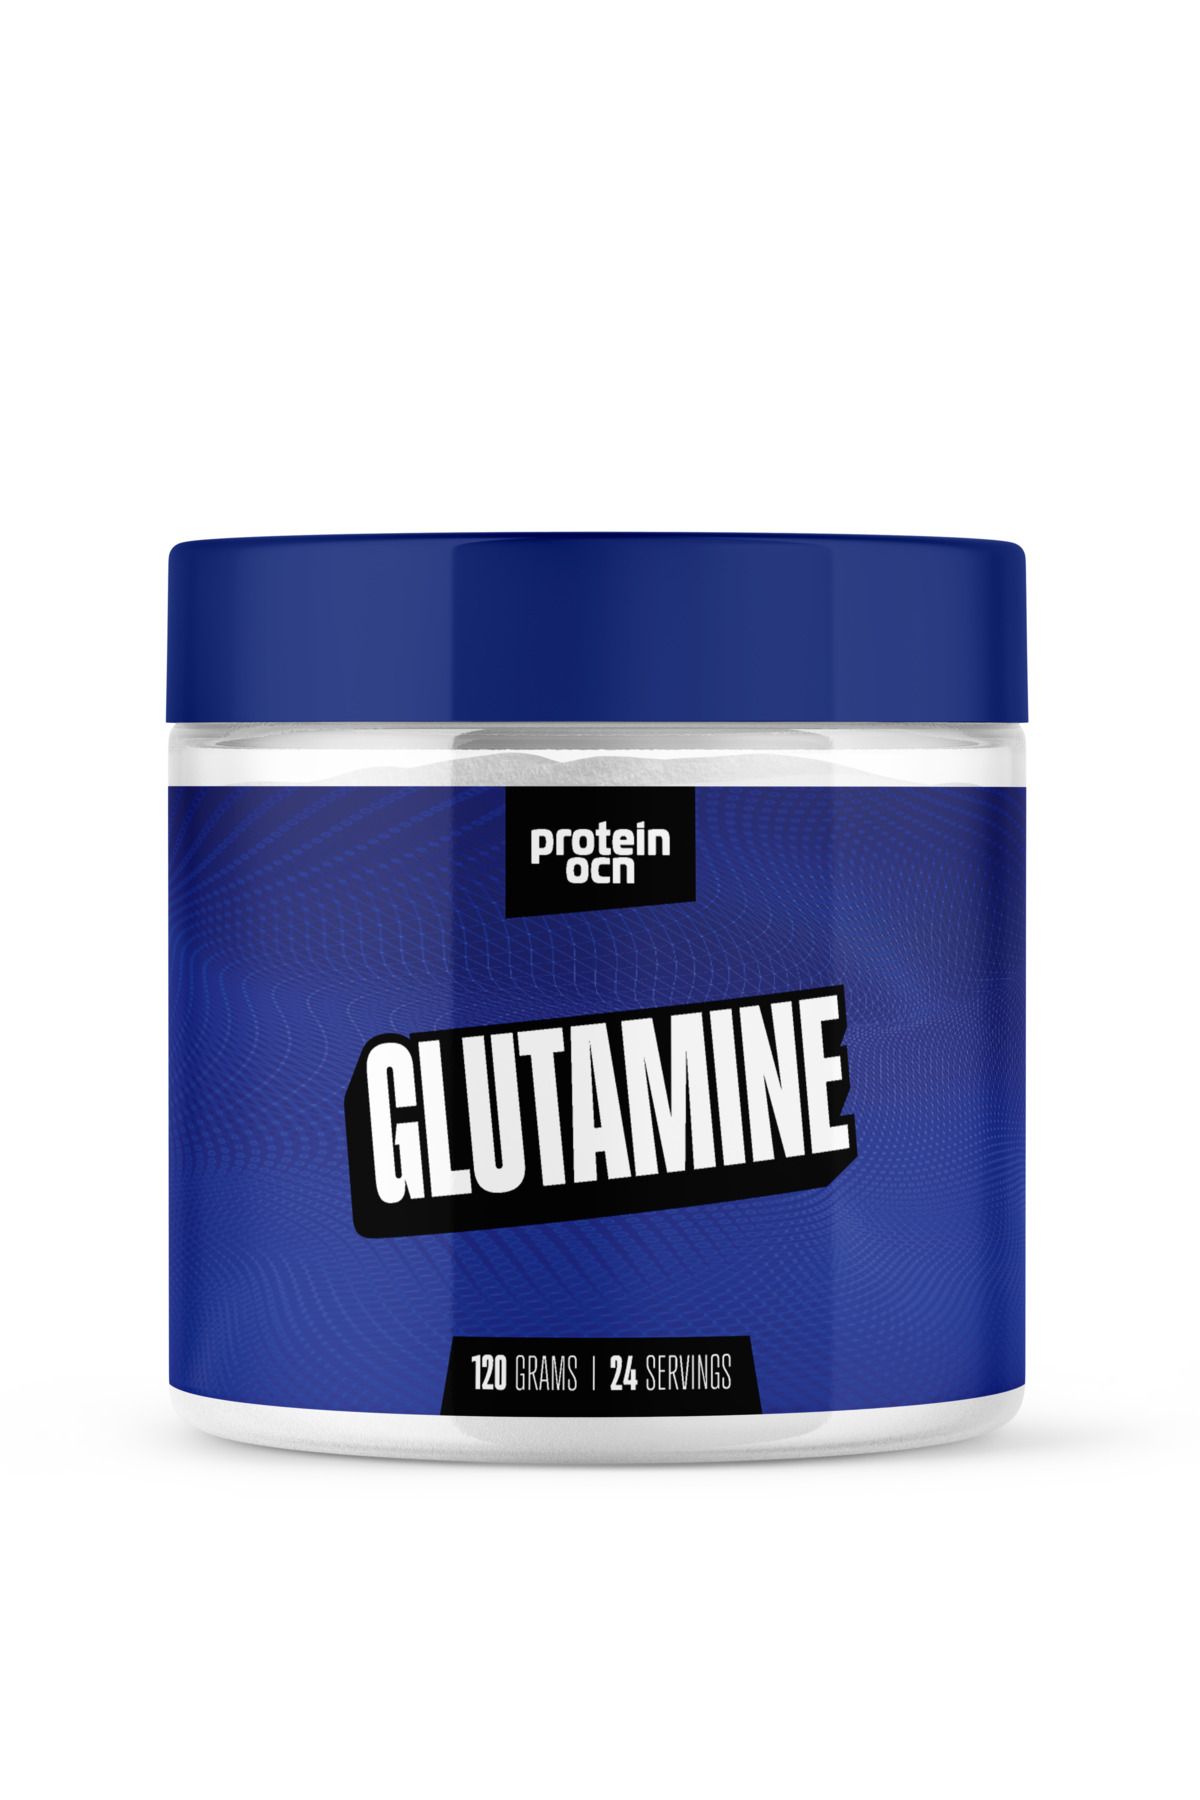 Proteinocean Glutamine - 120g - 24 Servis